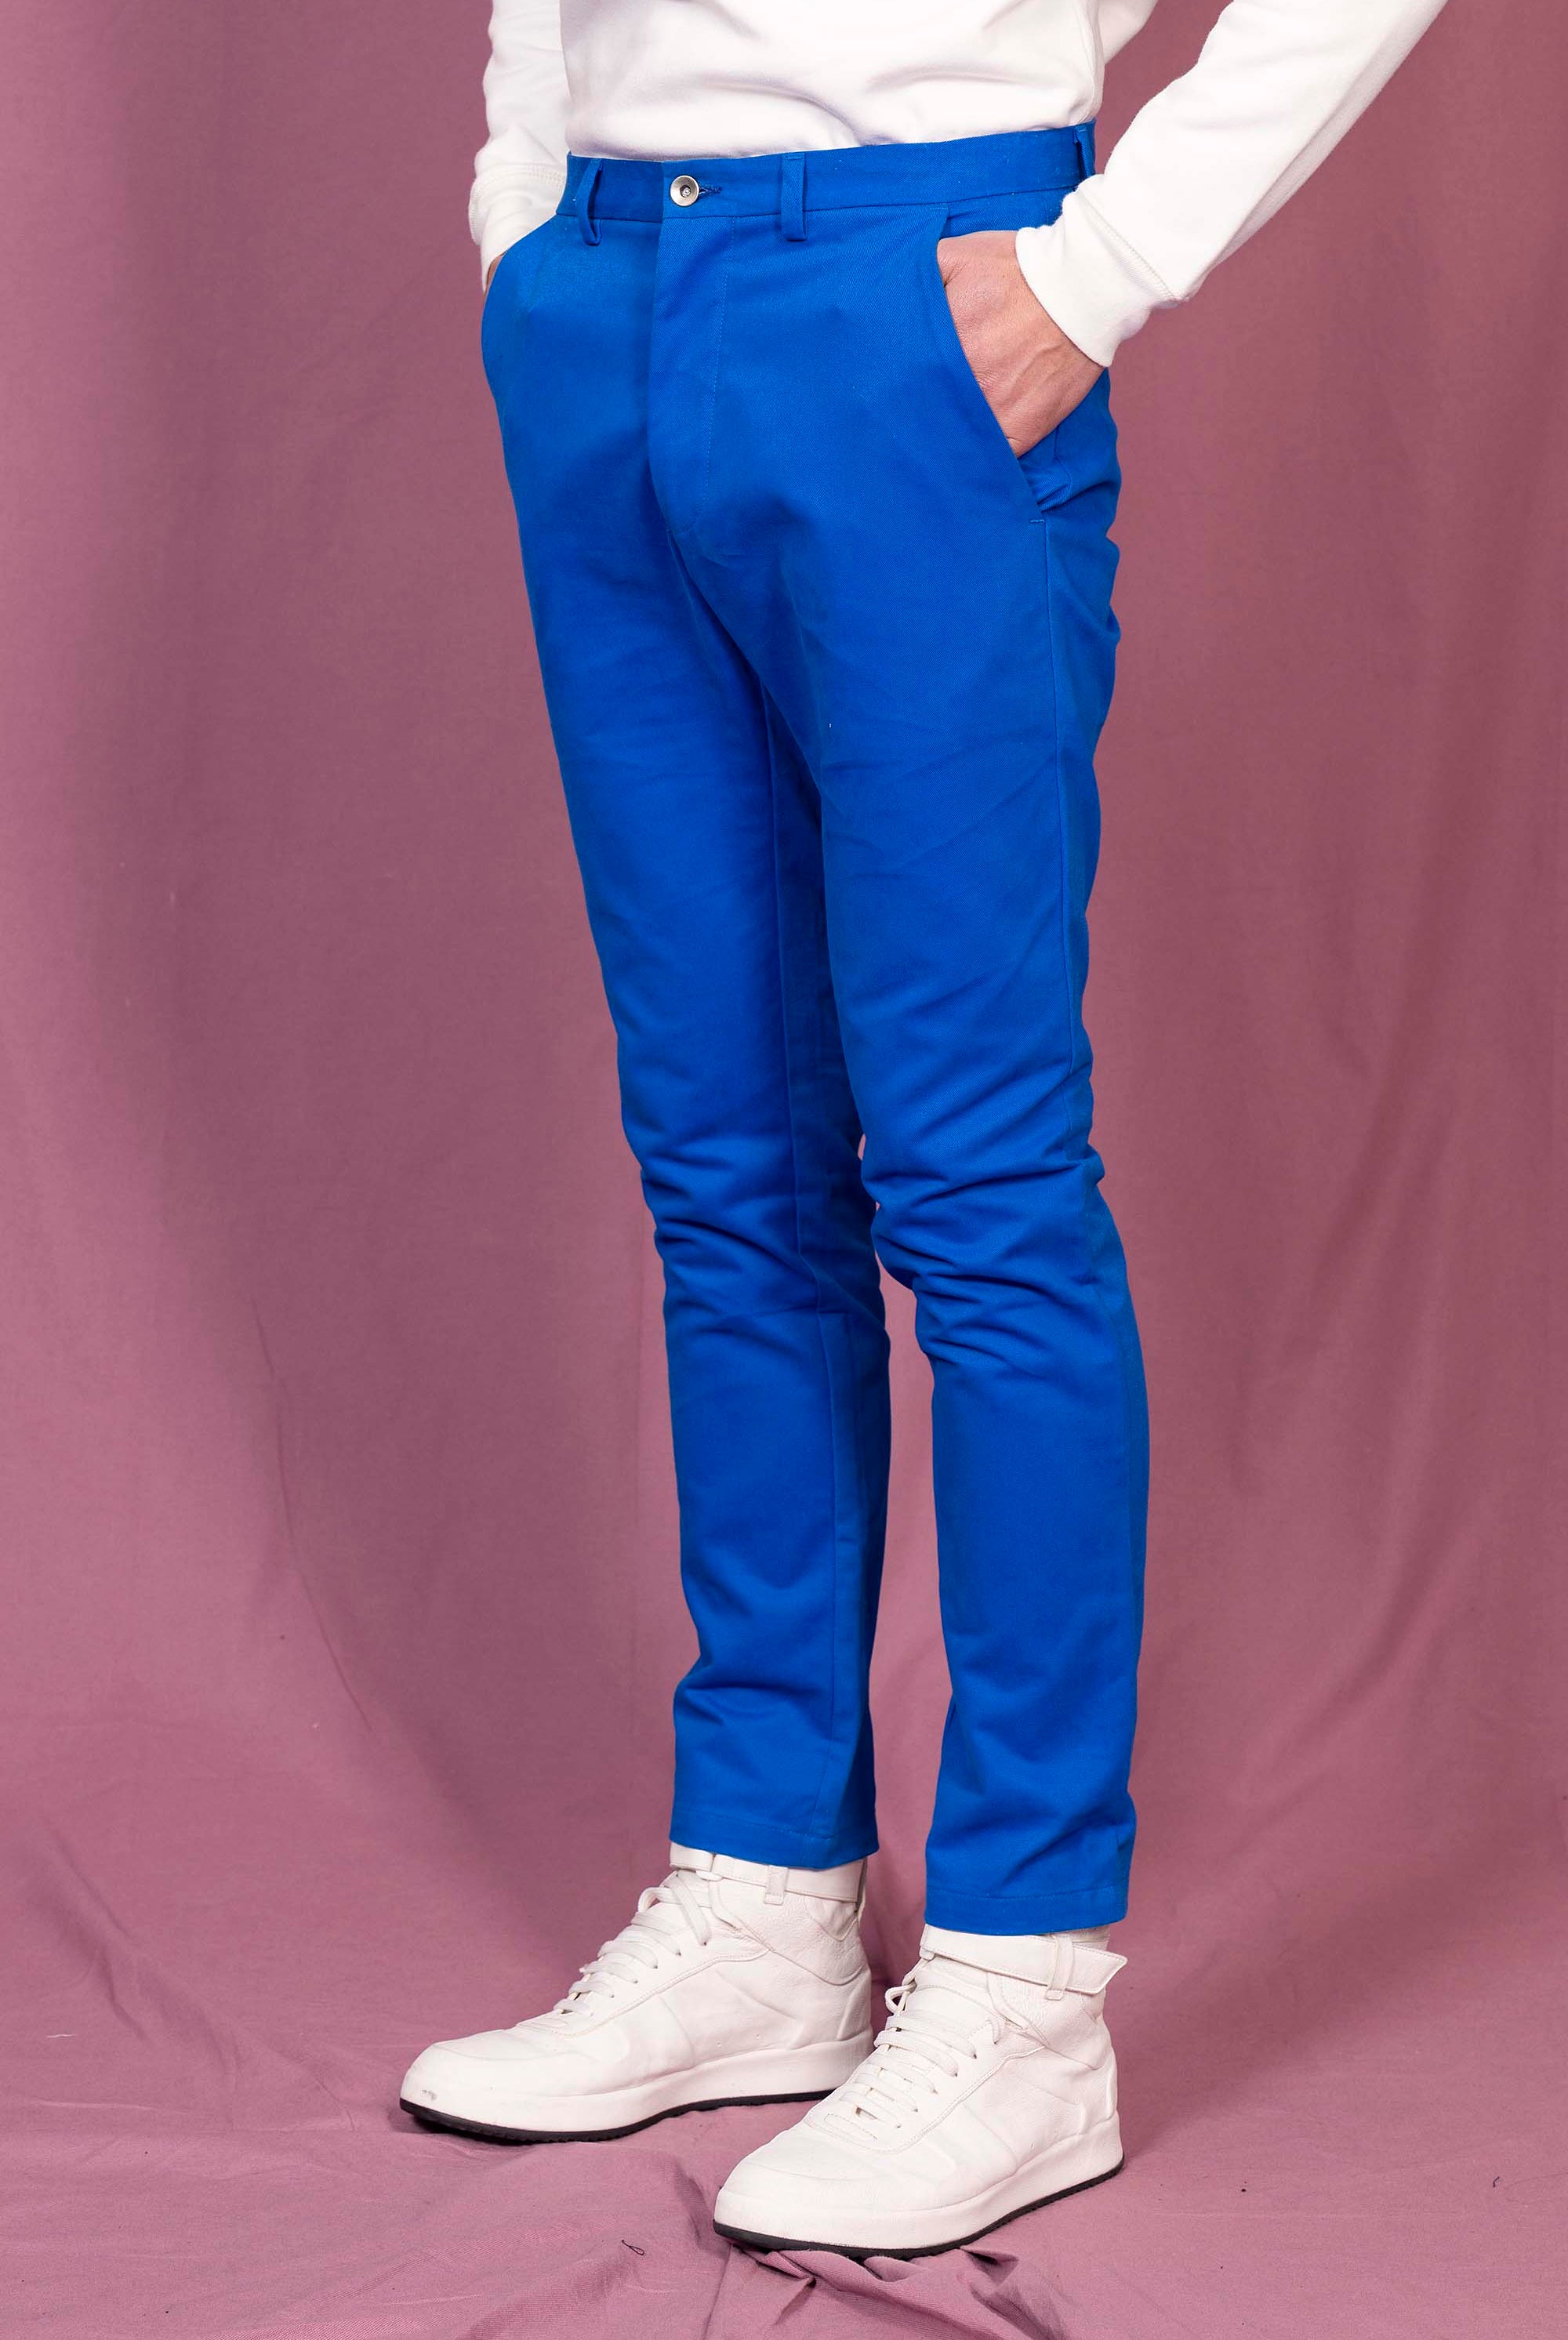 Pantalon General Bleu Saphir le pantalon classique affiche un esprit de distinction